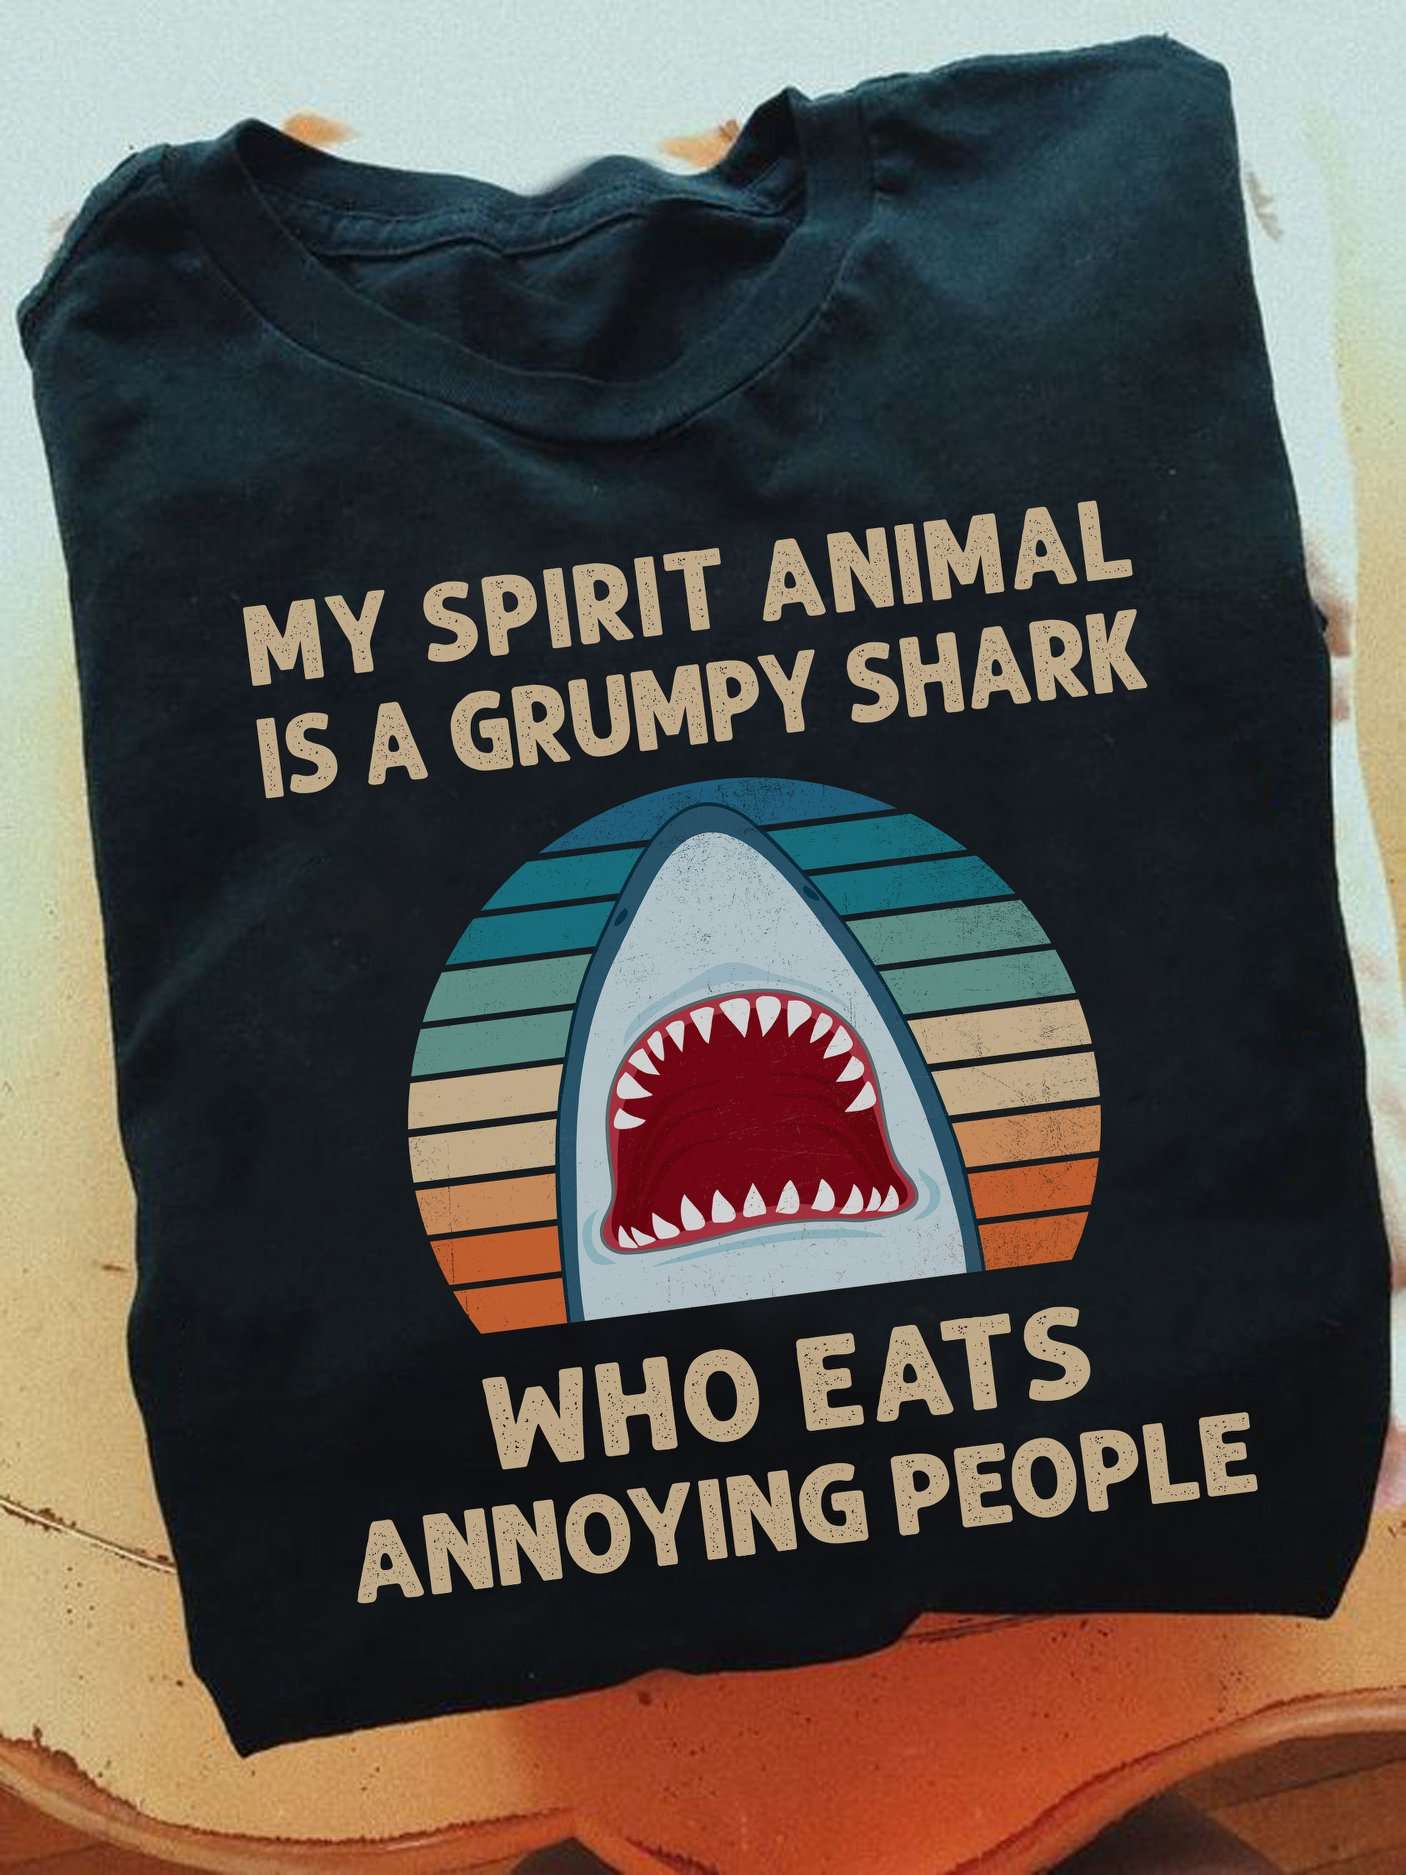 My spirit animal is a grumpy shark who eats annoying people - Shark the animal, sharp teeth shark